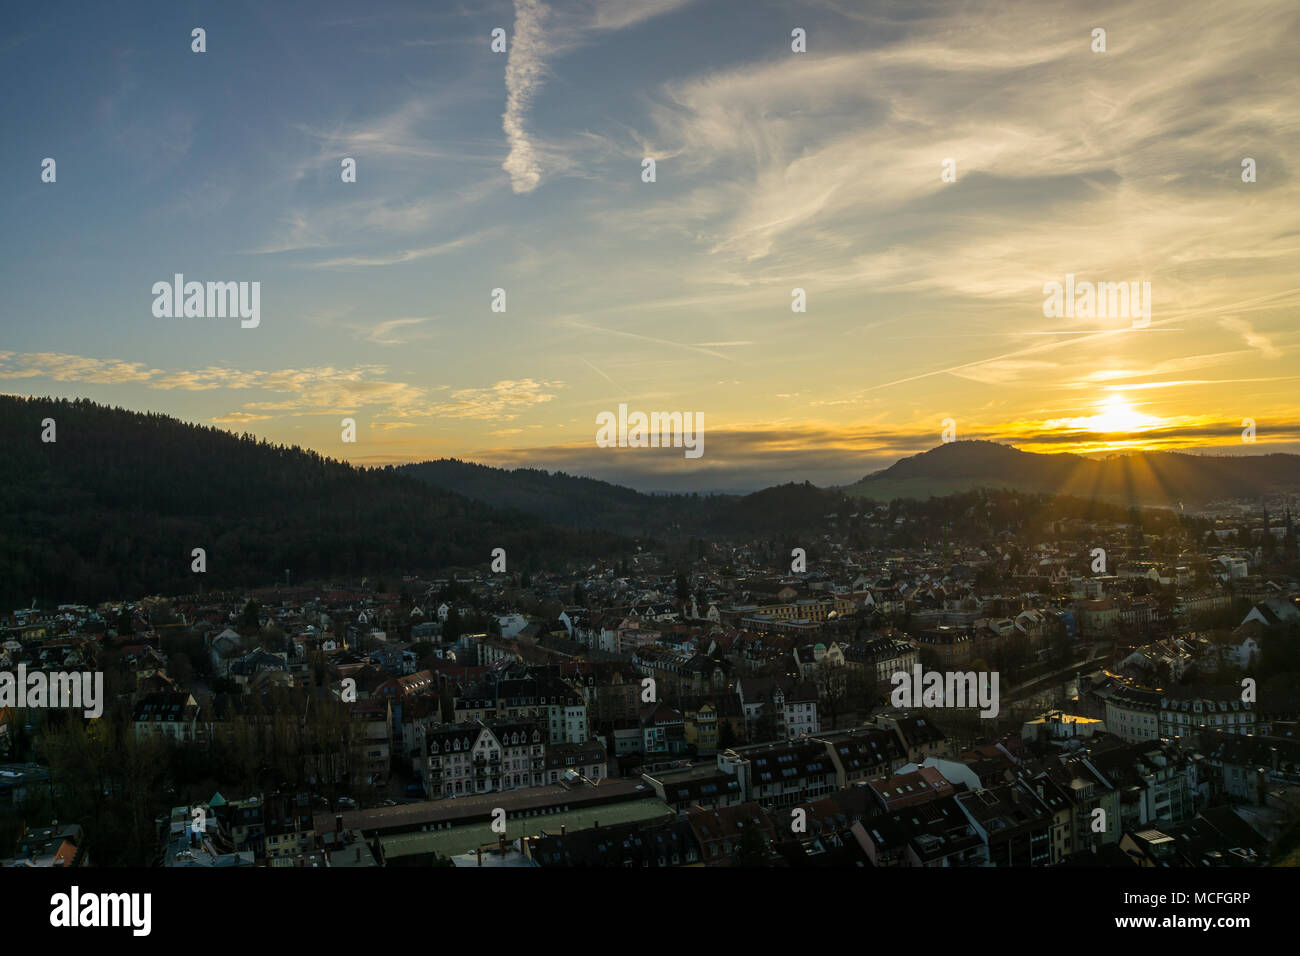 Germania, caldo arancione tramonto umore oltre le case di città di Freiburg im Breisgau dal di sopra Foto Stock